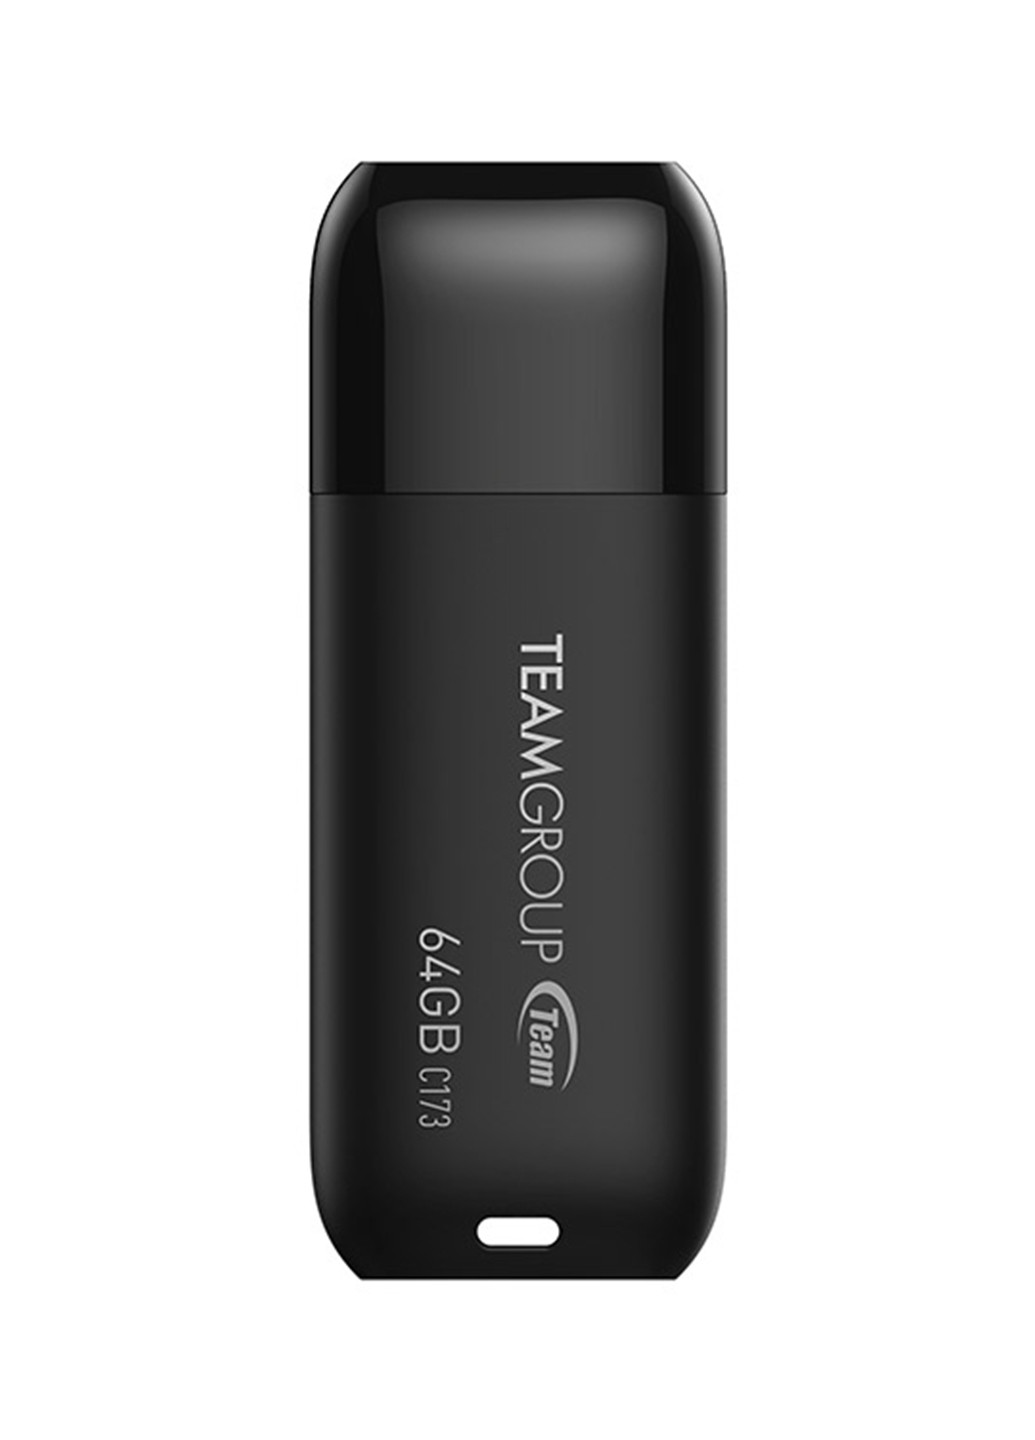 Флеш пам'ять USB C173 64GB Pearl Black (TC17364GB01) Team флеш память usb team c173 64gb pearl black (tc17364gb01) (134201659)